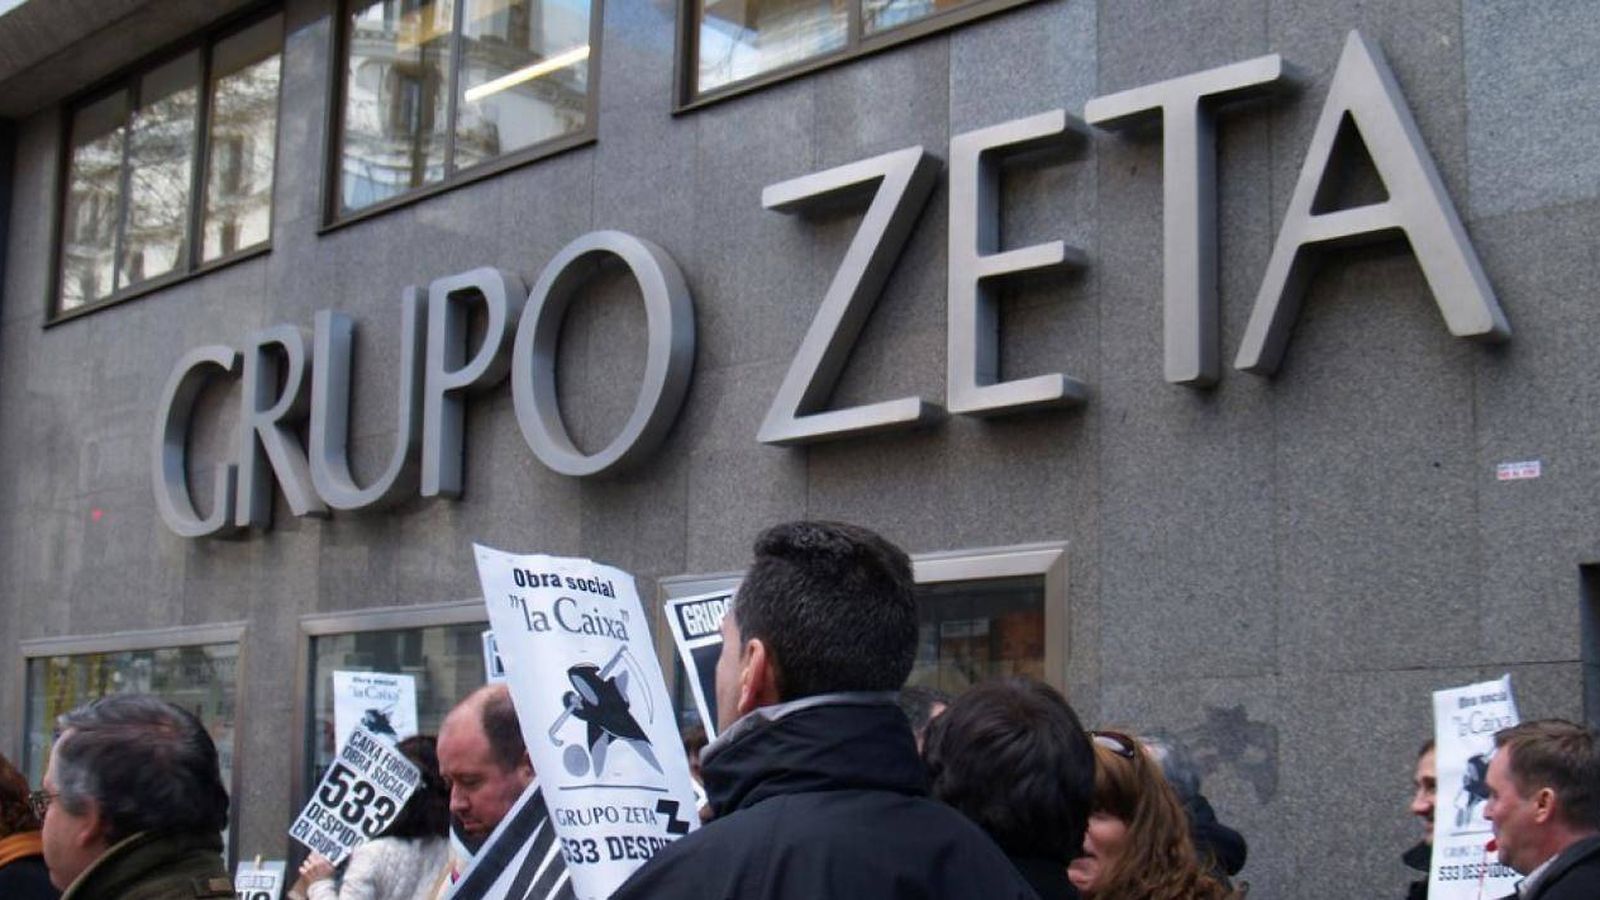 Foto: Imagen de archivo de protestas de los trabajadores de Grupo Zeta. (Foto: Sindicato de Periodistas de Madrid)